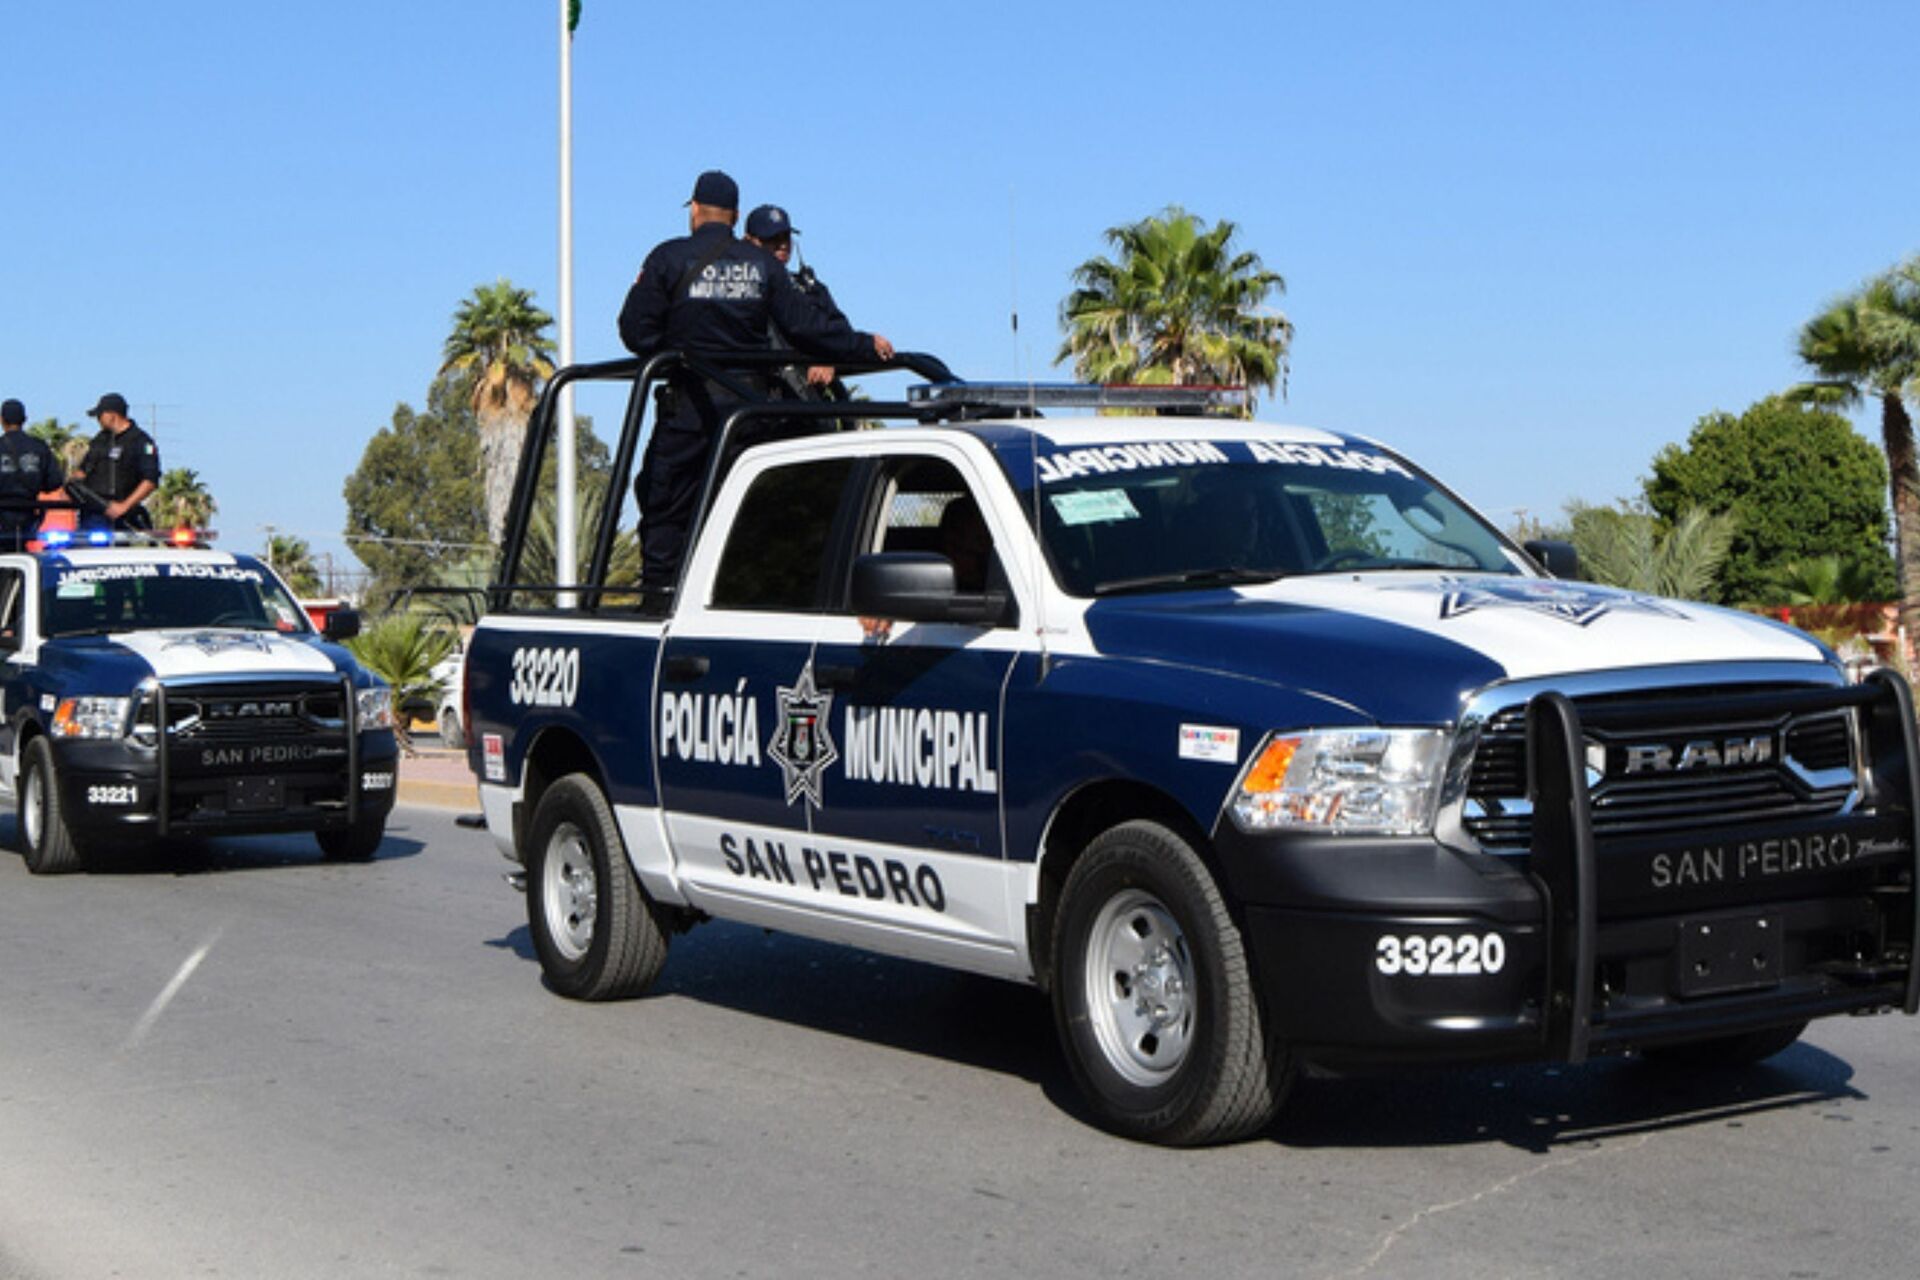 La Dirección de Seguridad Pública de San Pedro ha estado involucrada en la muerte de dos hombres y, con los últimos hechos registrados, sería el tercer caso. Por su parte, la Policía de Torreón concentra solo un caso durante el presente año.